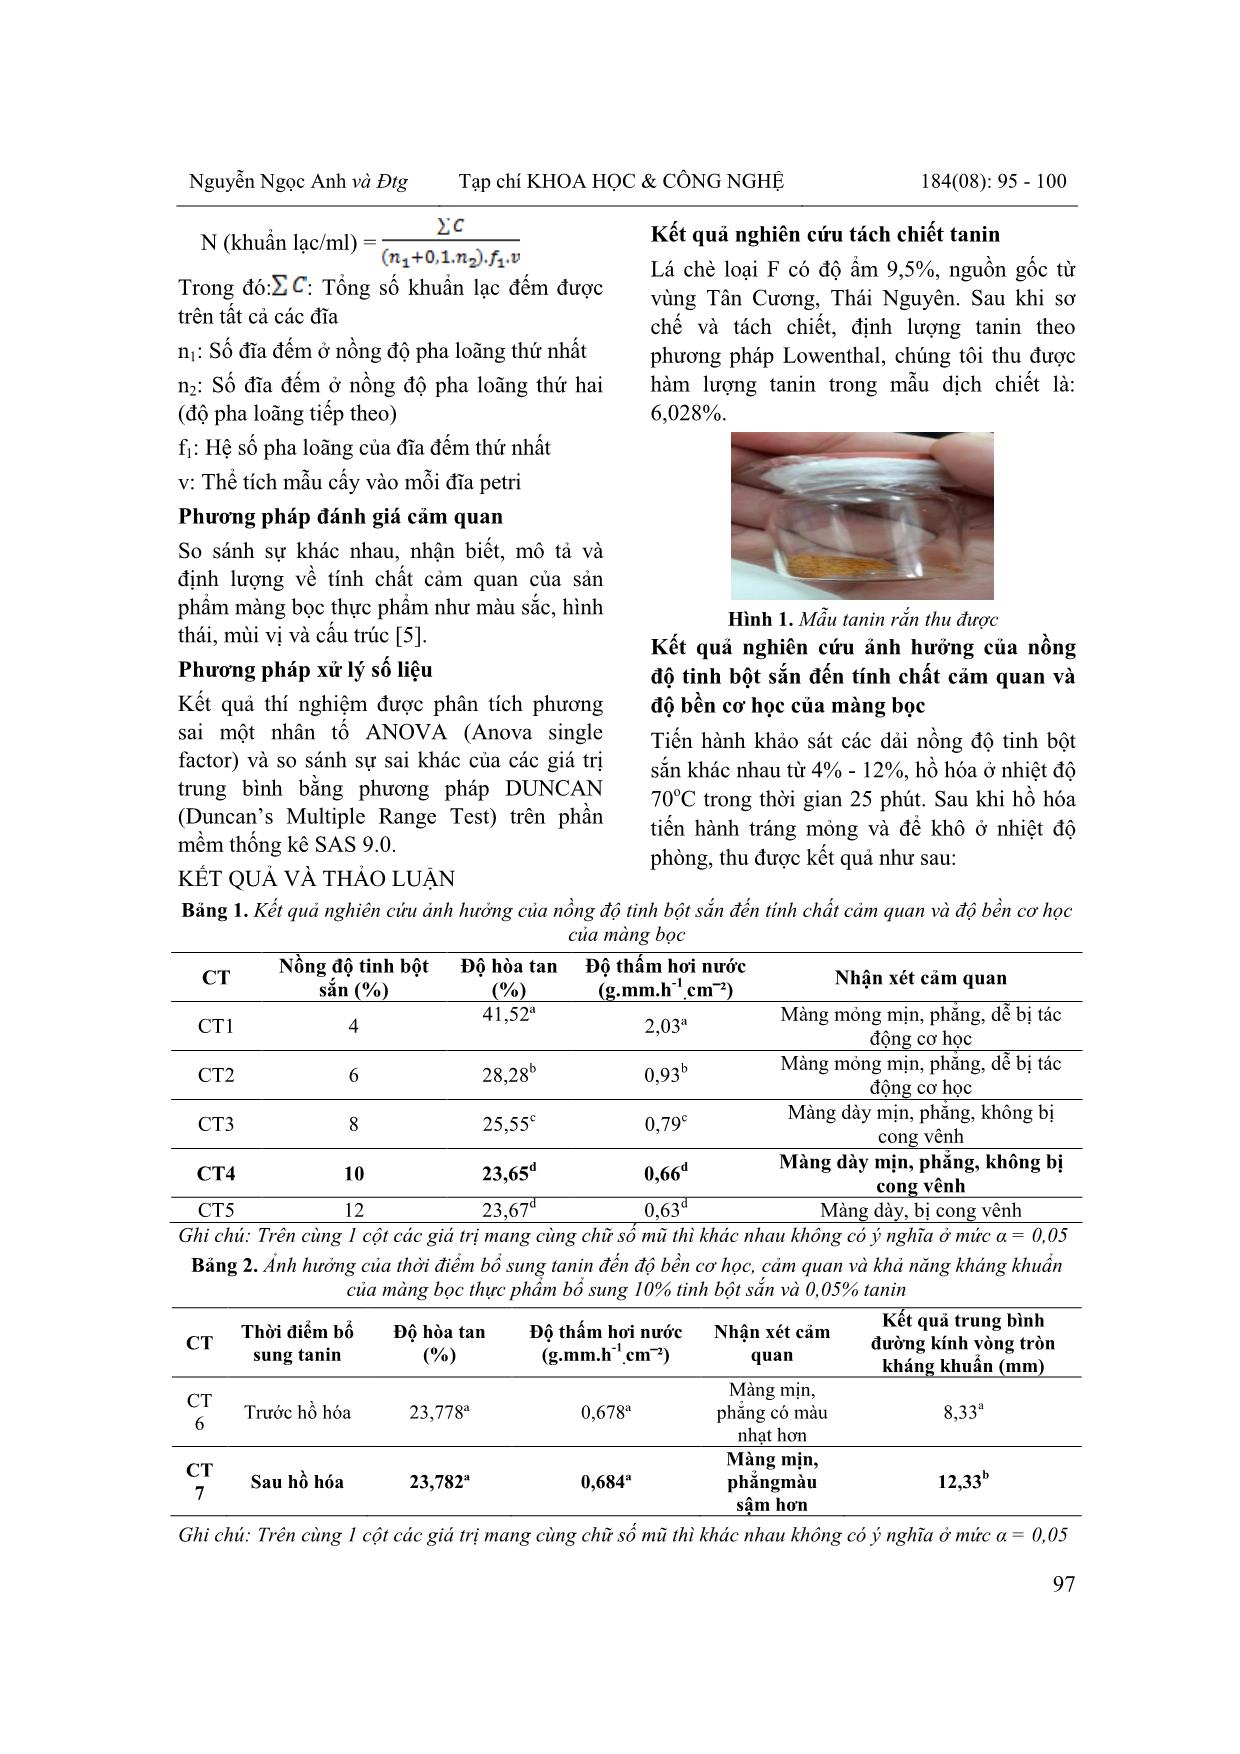 Nghiên cứu phương pháp chế tạo màng bọc thực phẩm từ tinh bột sắn có bổ sung tanin trang 3